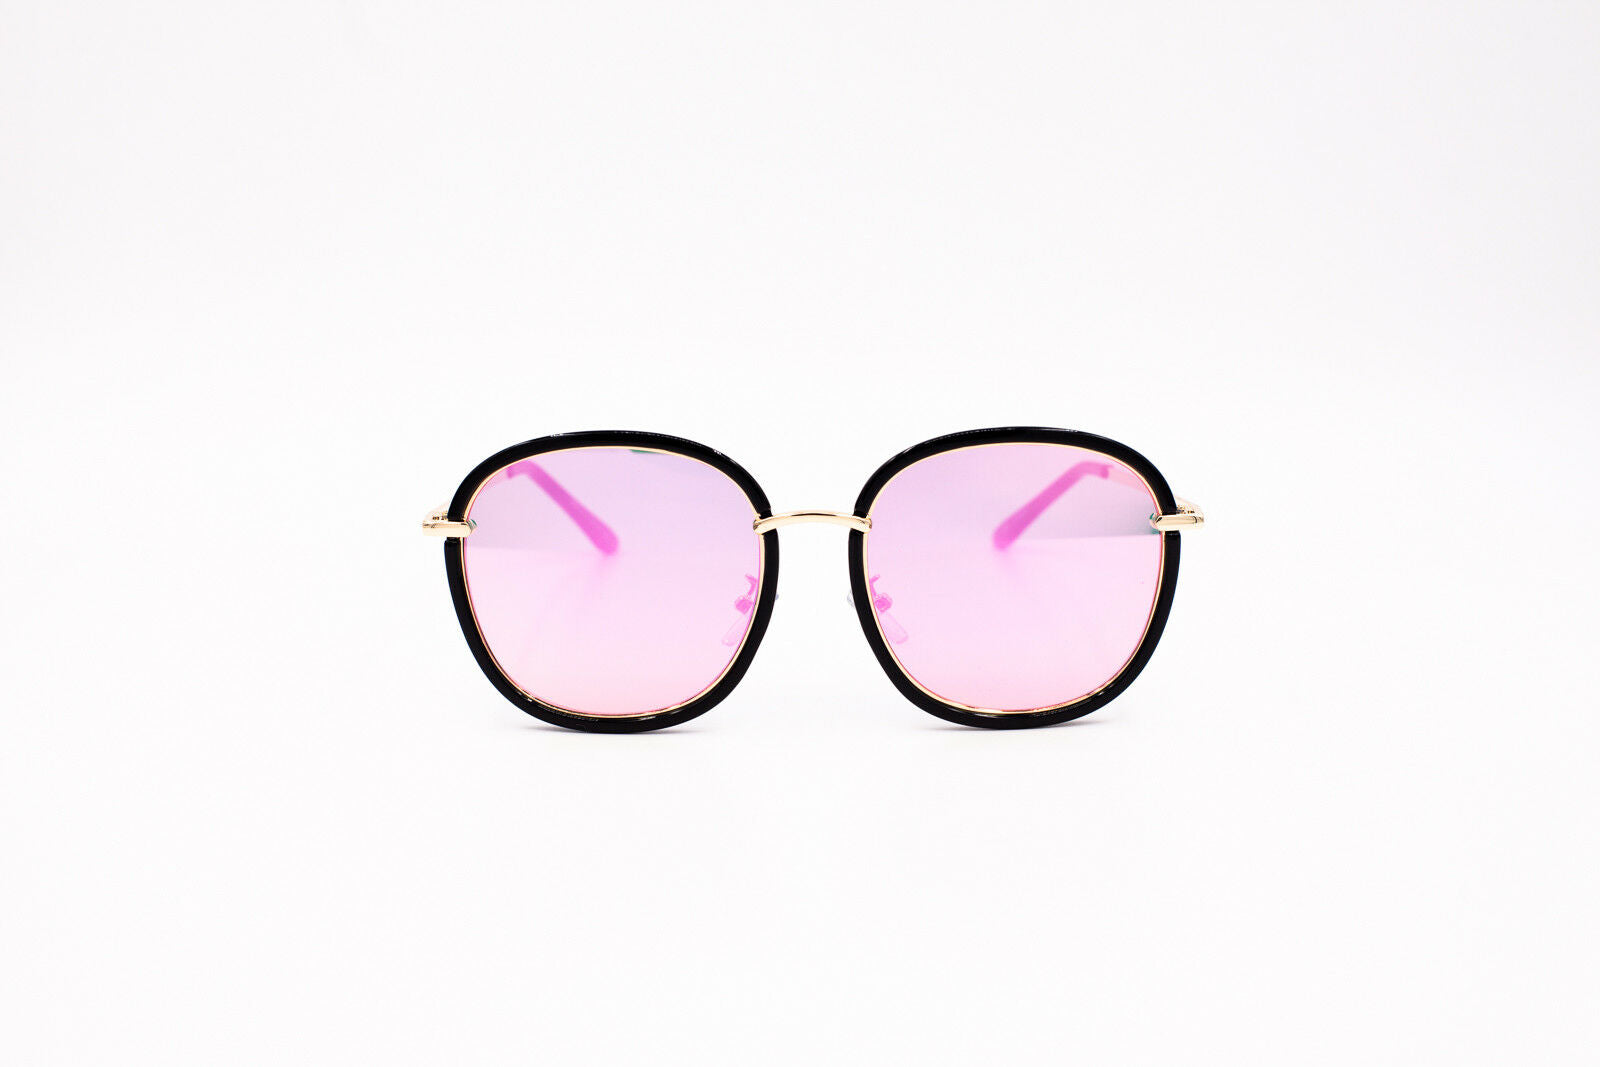 Sunglasses Womens UV400 Stylish Sports Fashion Eyewear Casual Hardcase - Pantsnsox